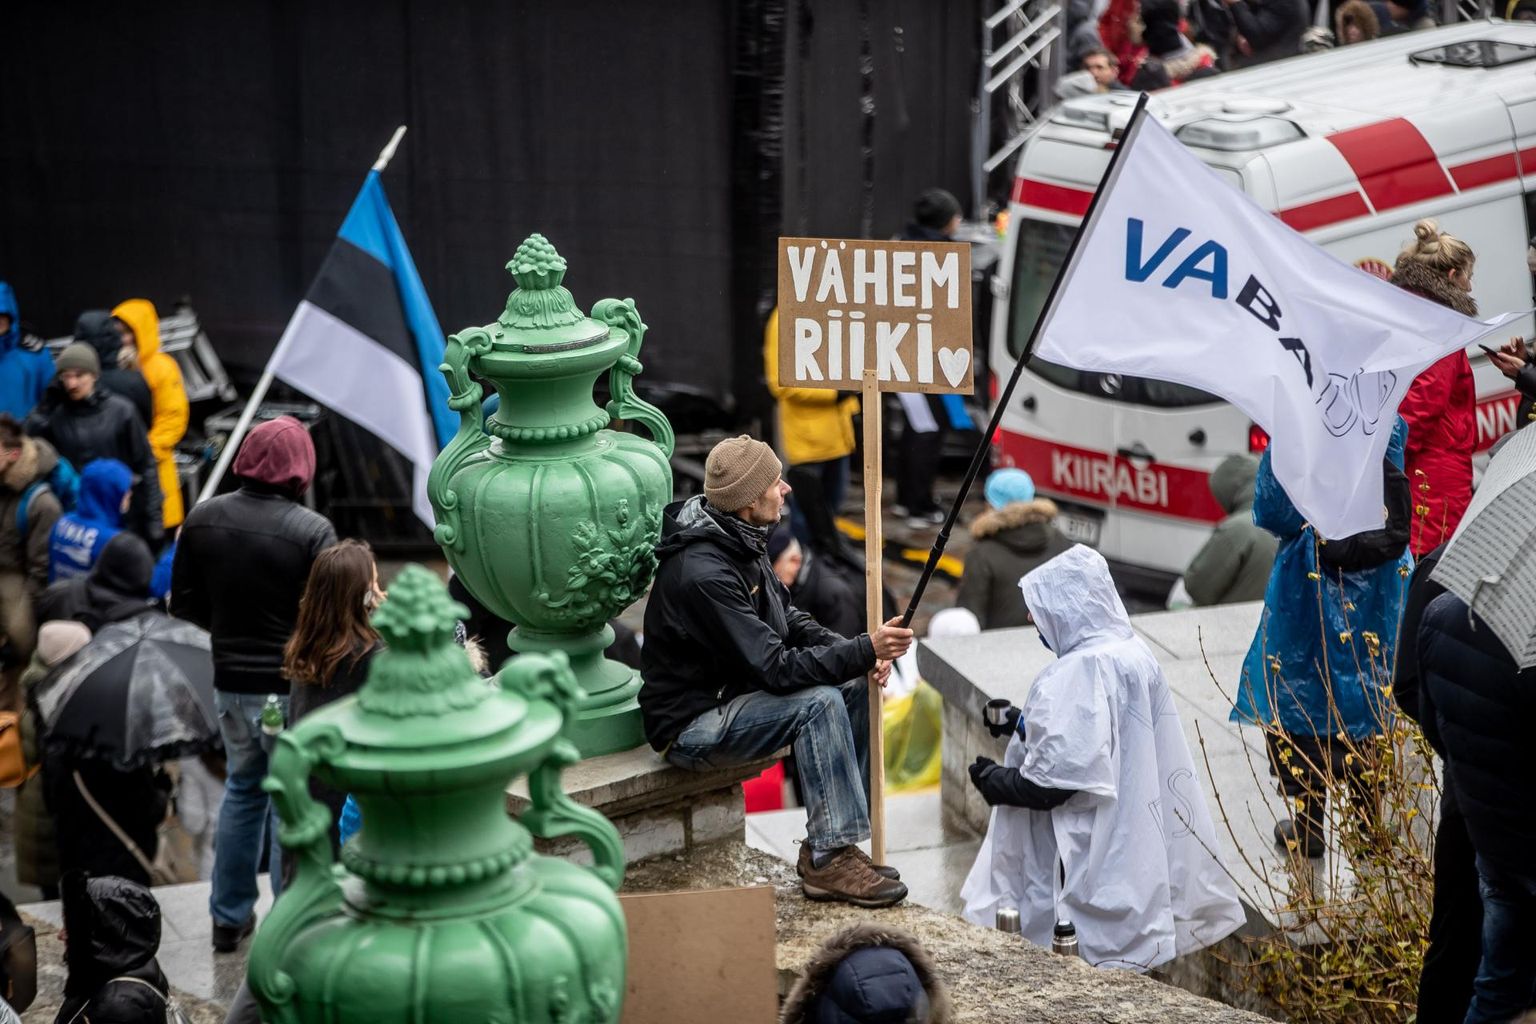 23.10.2021 Tallinn SAPTK meeleavaldus Vabaduse väljakul. Meeleavaldus korraldati selleks, et nõuda Covid-19 vastases võitluses austuse taastamist vaba ühiskonna aluseks olevate põhimõtete vastu.